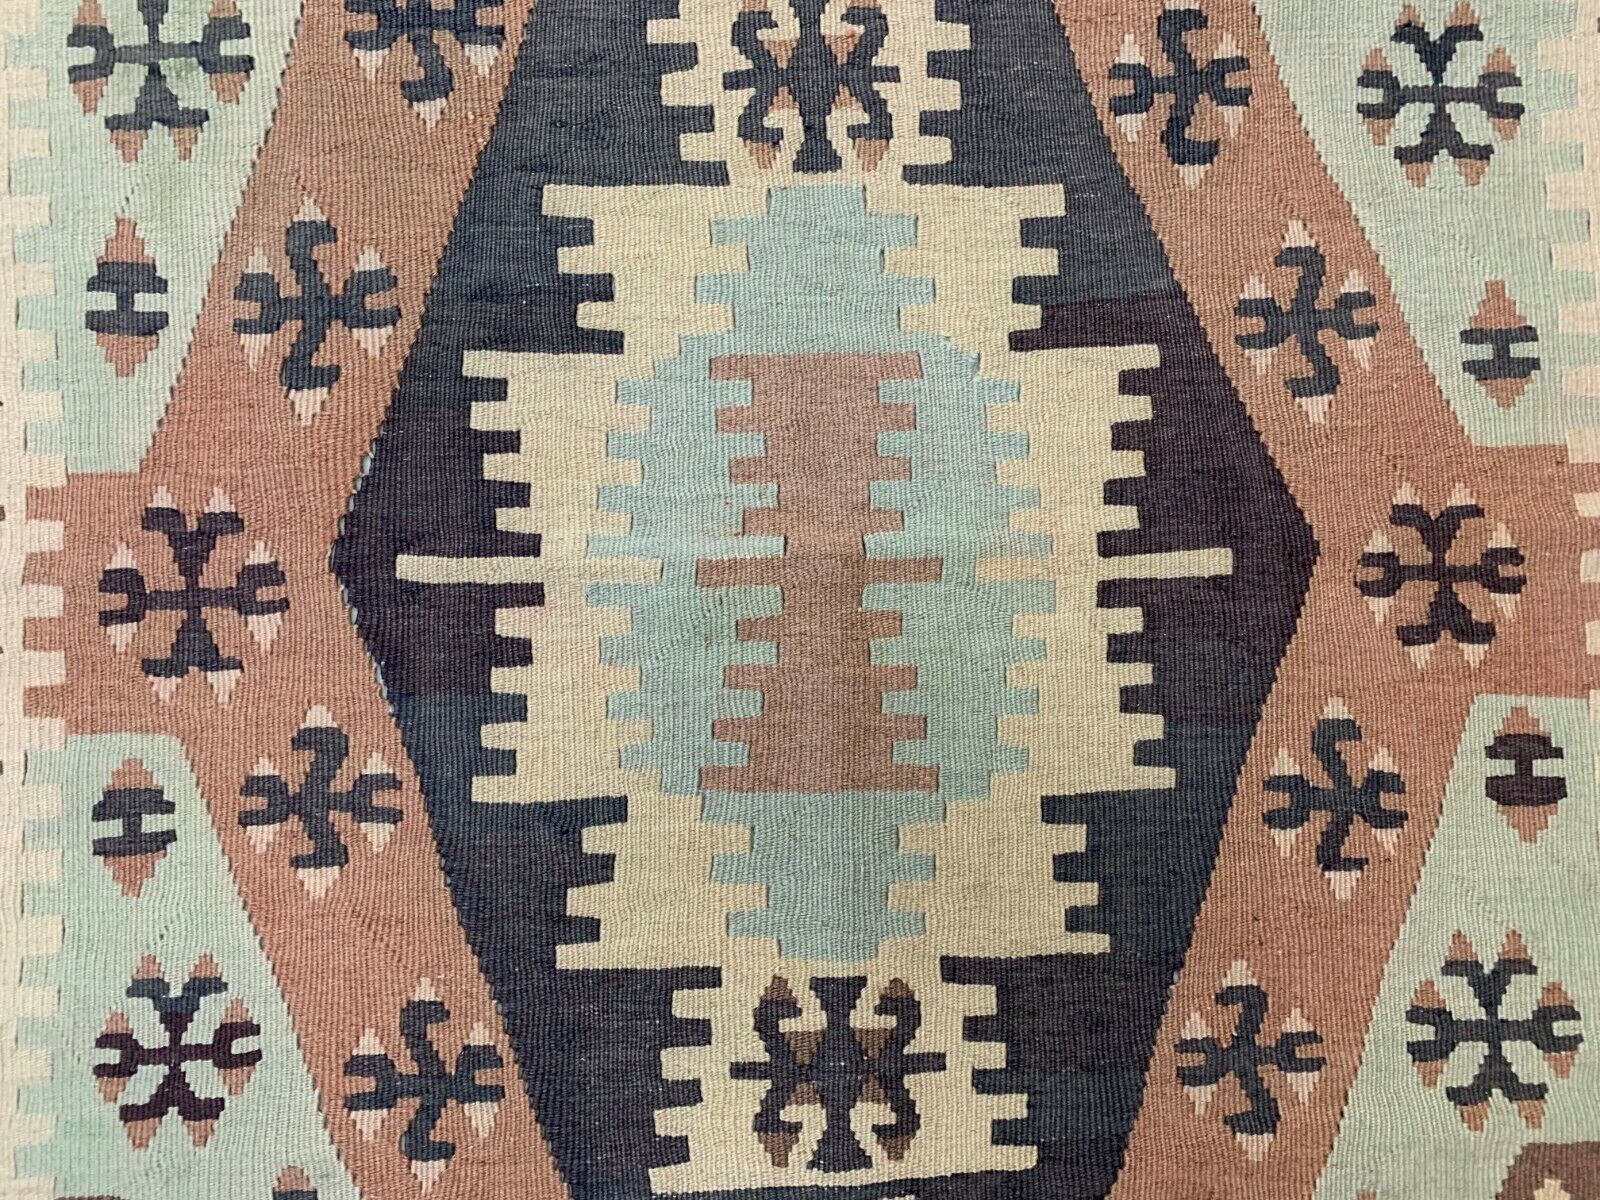 Vintage Turkish Kilim Kelim Rug shabby, country home, boho 145x99 cm medium Antiques:Carpets & Rugs kilimshop.myshopify.com